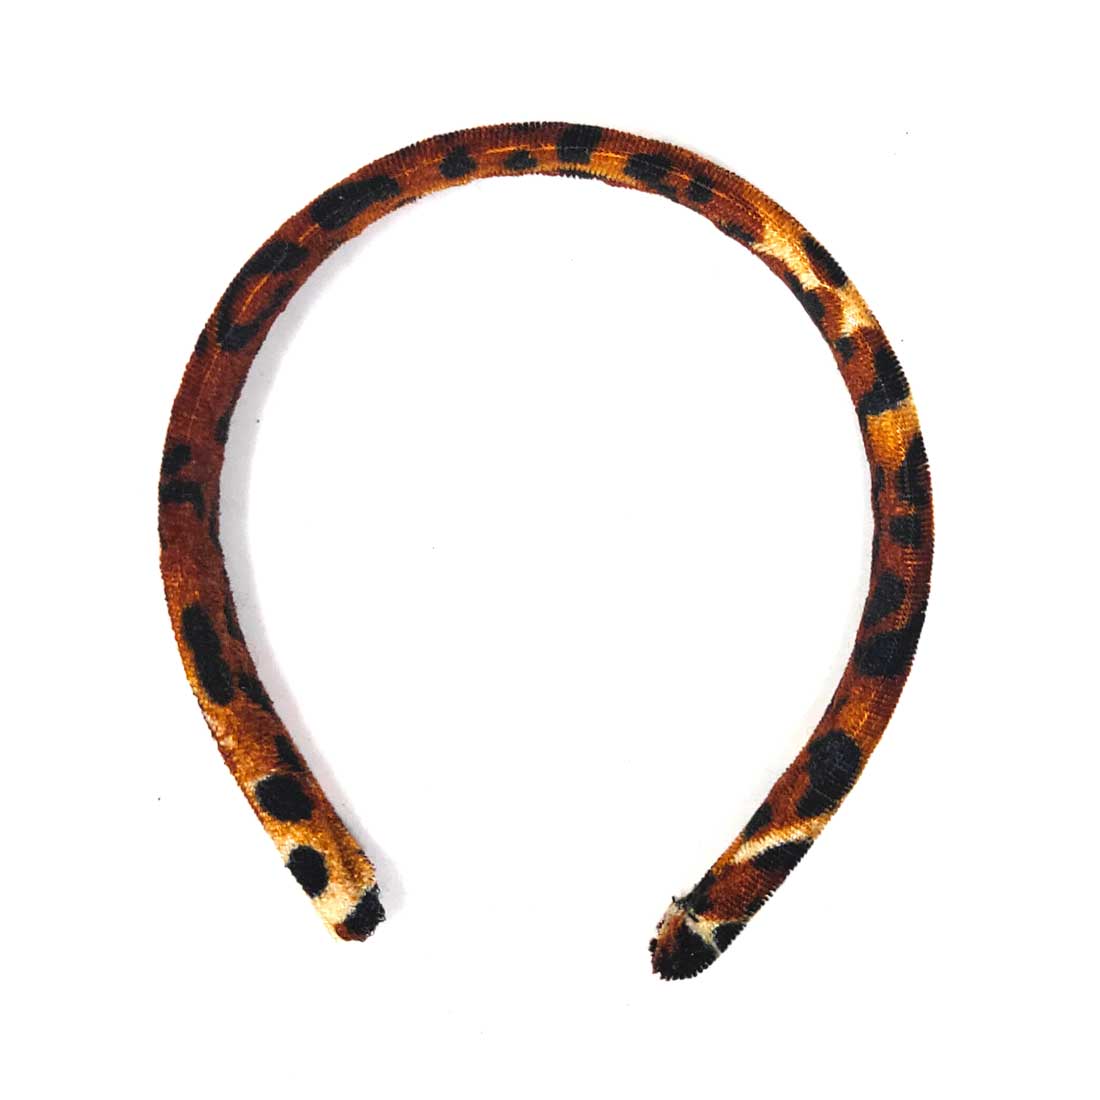 Anokhi Ada Velvet on Plastic Hairbands / Headbands for Kids and Girls (Orange, Pack of 1) - 09-12H